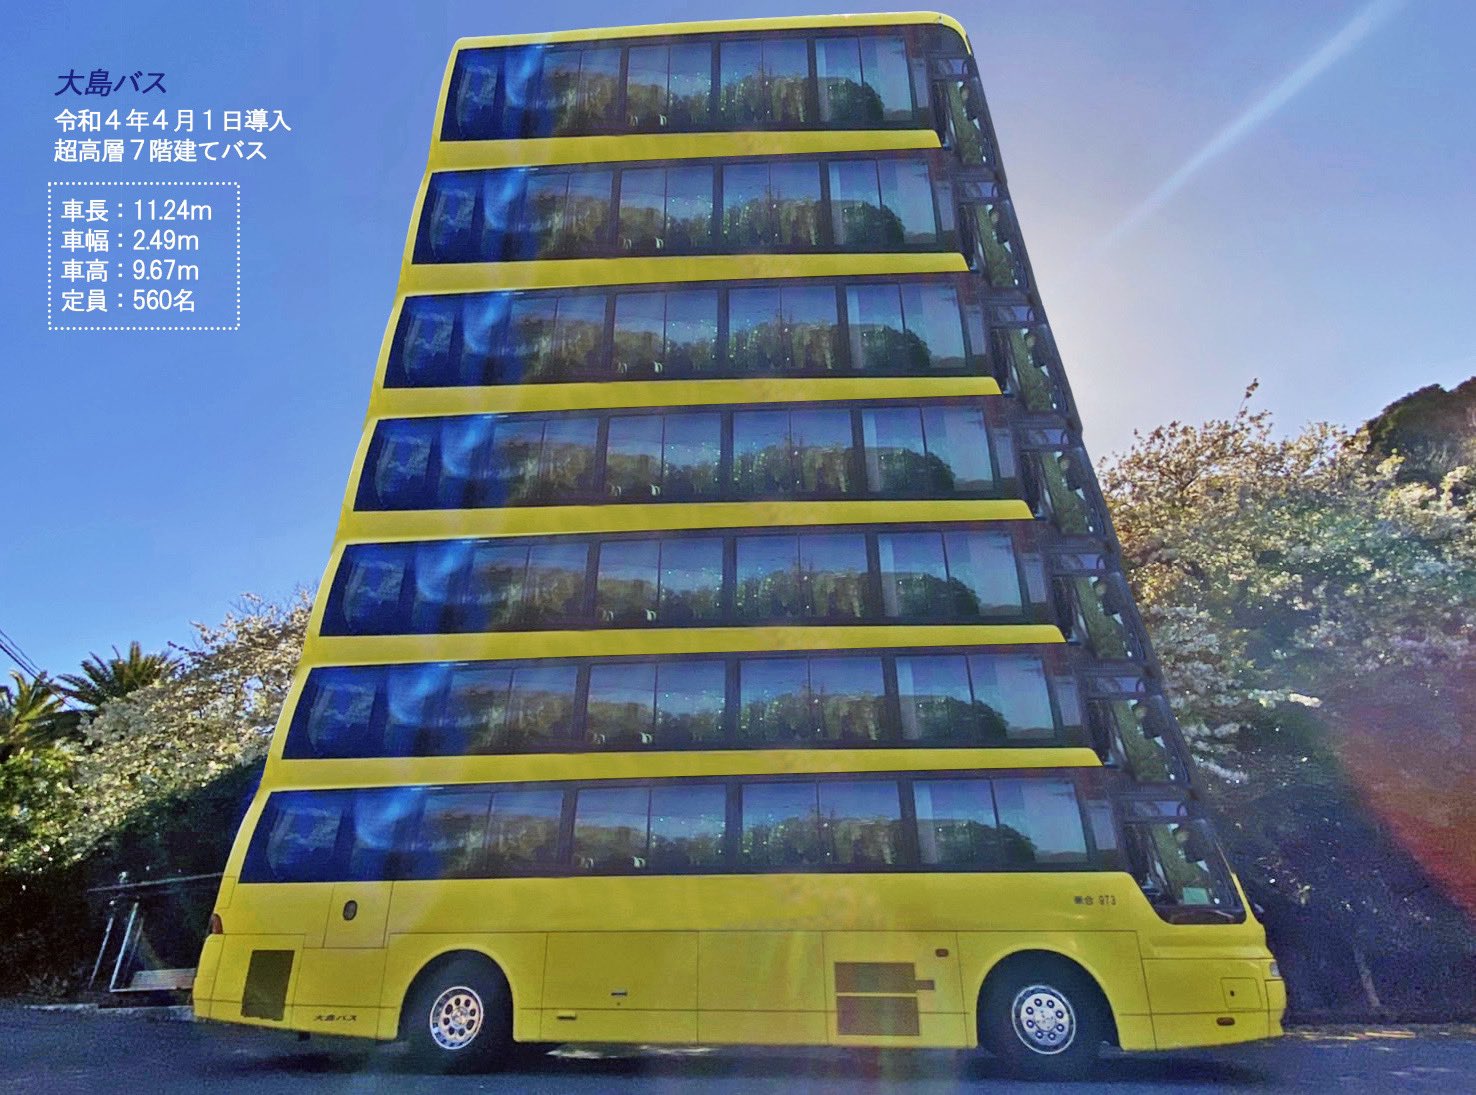 大島バス 公式 Oshimabus Twitter